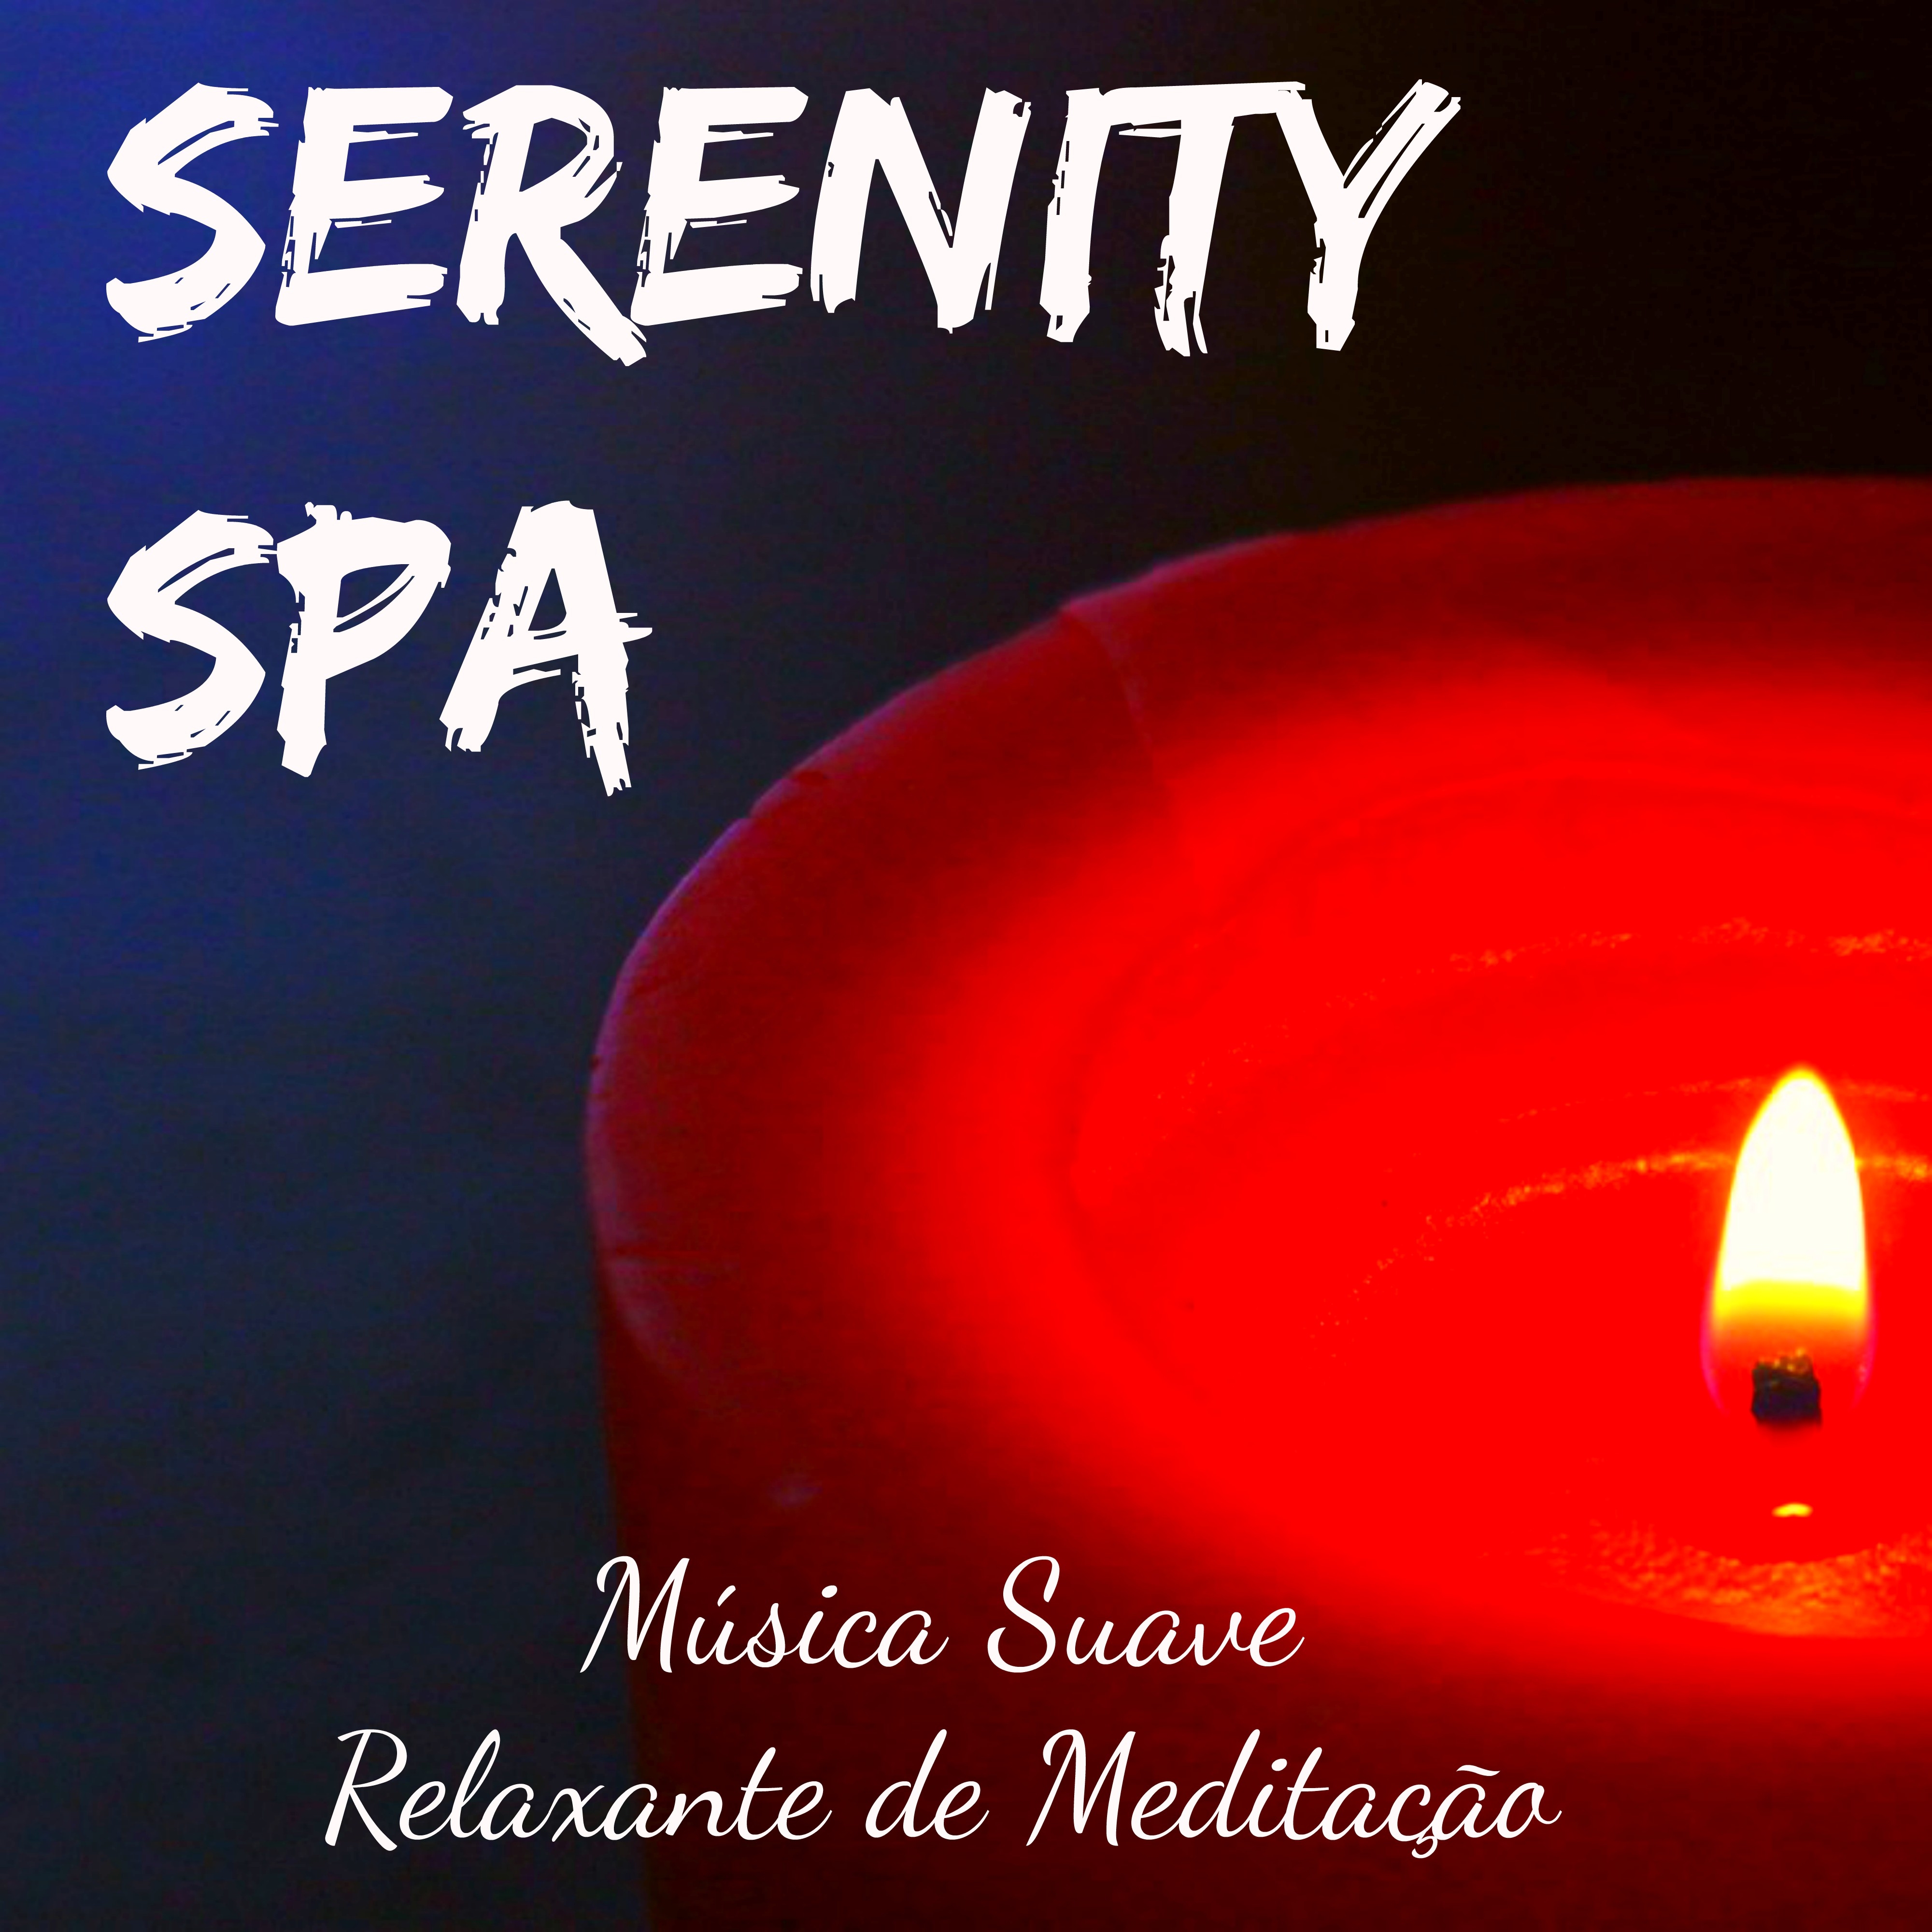 Serenity Spa  Mu sica Suave Relaxante de Medita o para Doces Sonhos Poder Espiritual Vibra es Positivas com Sons da Natureza Instrumentais Binaurais